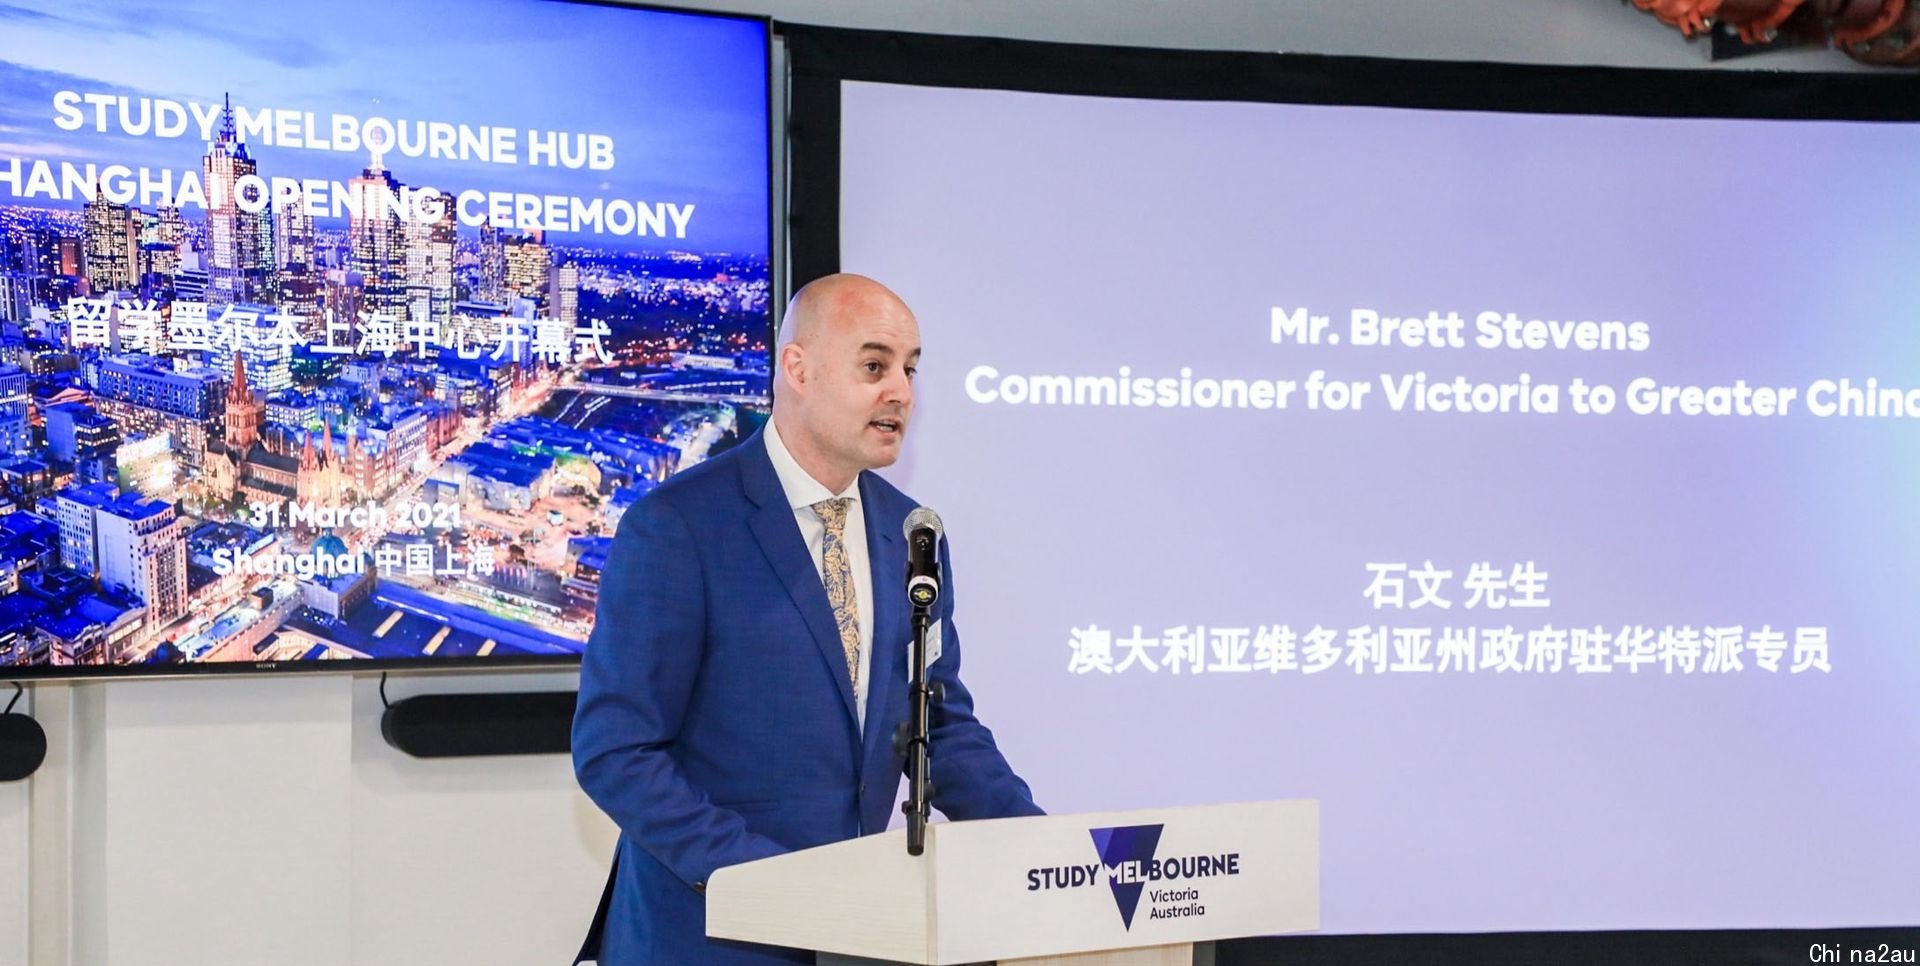 澳大利亚维多利亚州近年来积极与中国发展商贸文化往来，图为该州驻华特派专员于今年3月31日在上海出席“留学墨尔本上海中心”的开幕式。（Global Victoria官网）